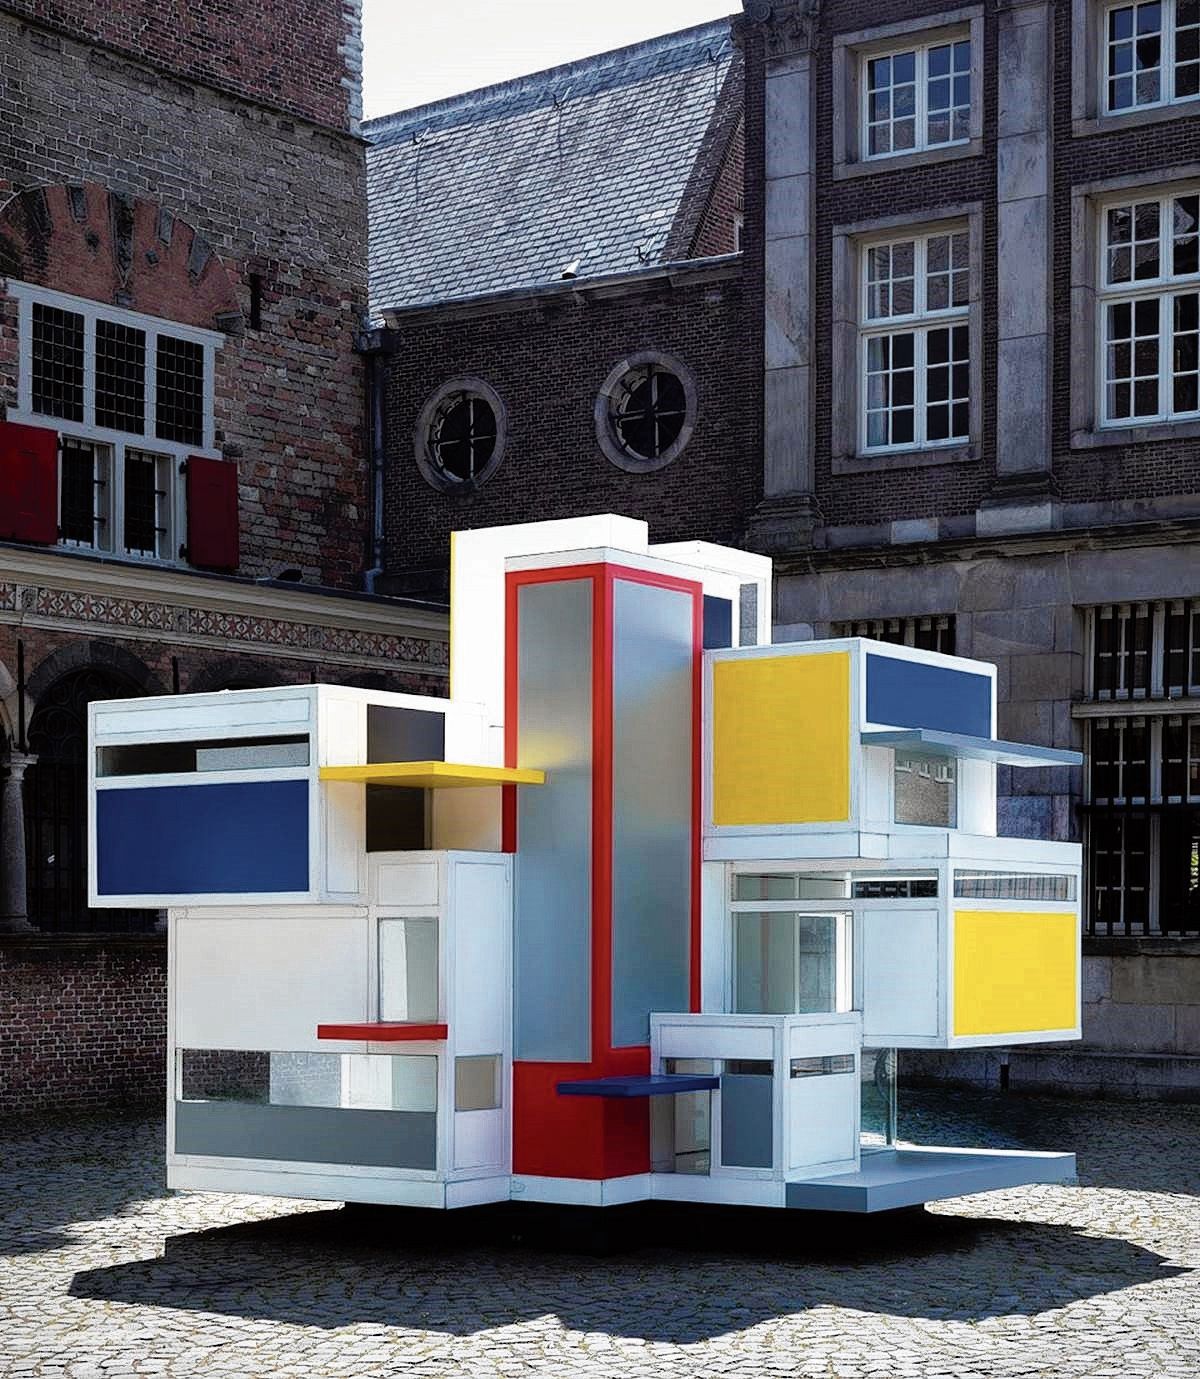 Maison d’Artiste van Van Doesburg en Van Eesteren, 1923 (links) en Lego House van Bjarke Ingels, 2017 (rechts).